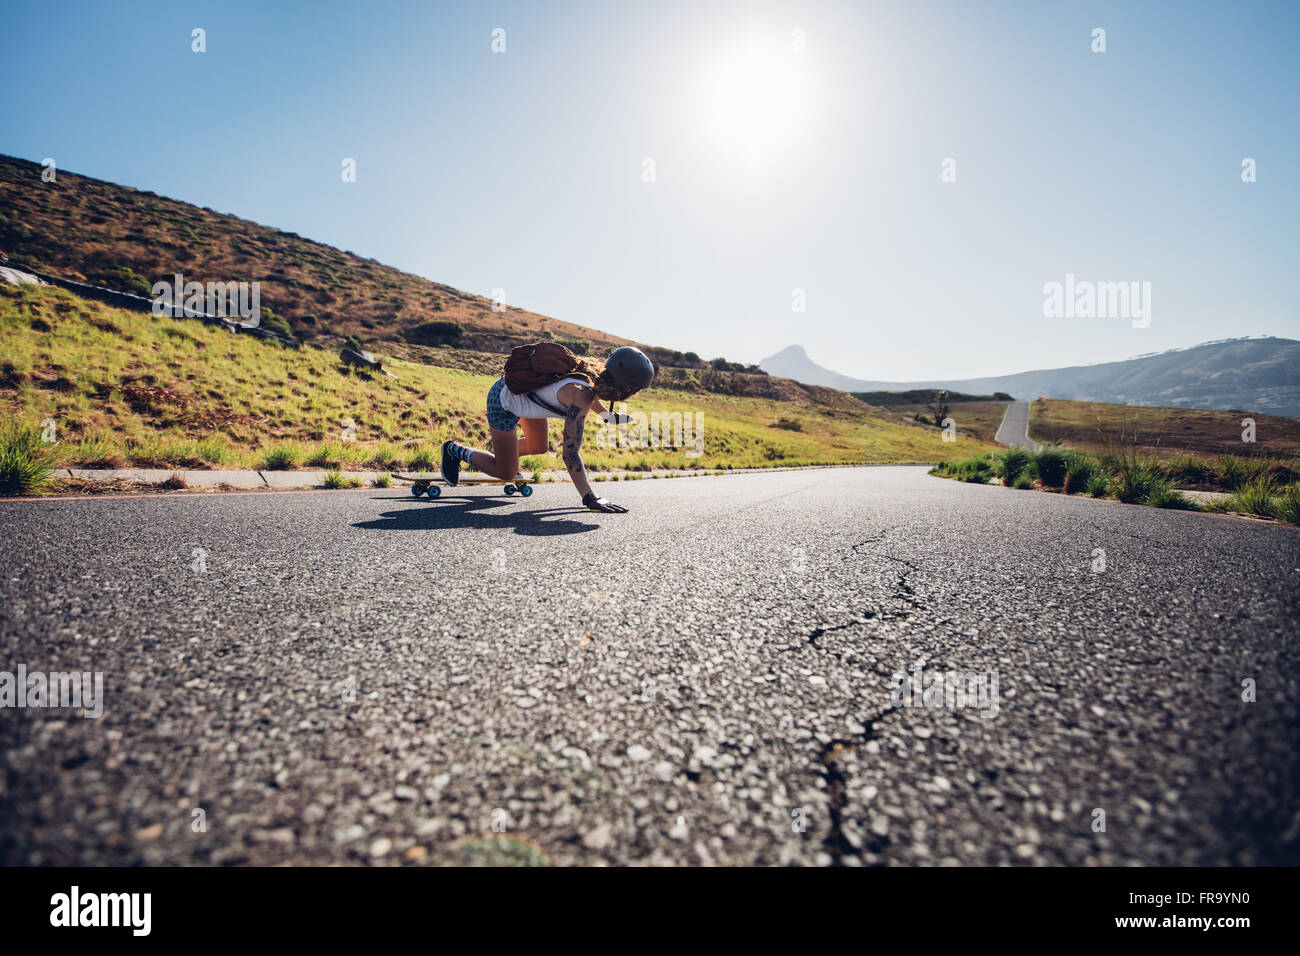 Vista posteriore del giovane pattinatore femmina praticare lo skateboard su strade rurali in una giornata di sole. Lei sta facendo acrobazie e toccando il ro Foto Stock